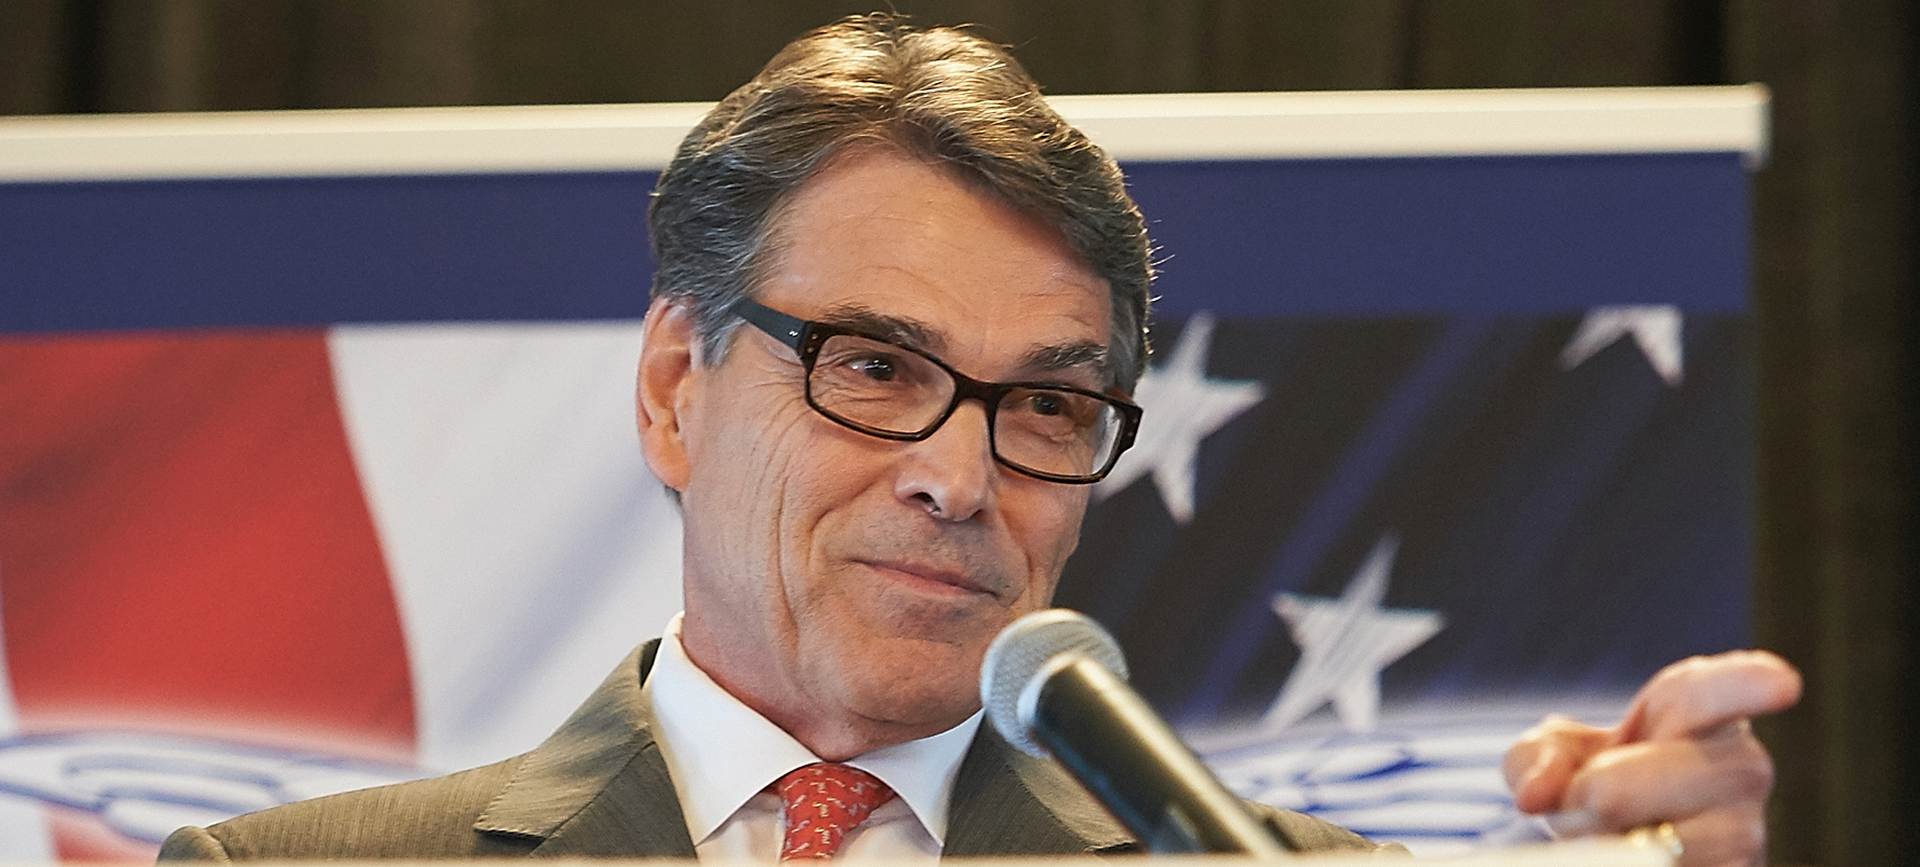 PRESKUP SPORT: Rick Perry odustao od utrke za predsjedničke izbore